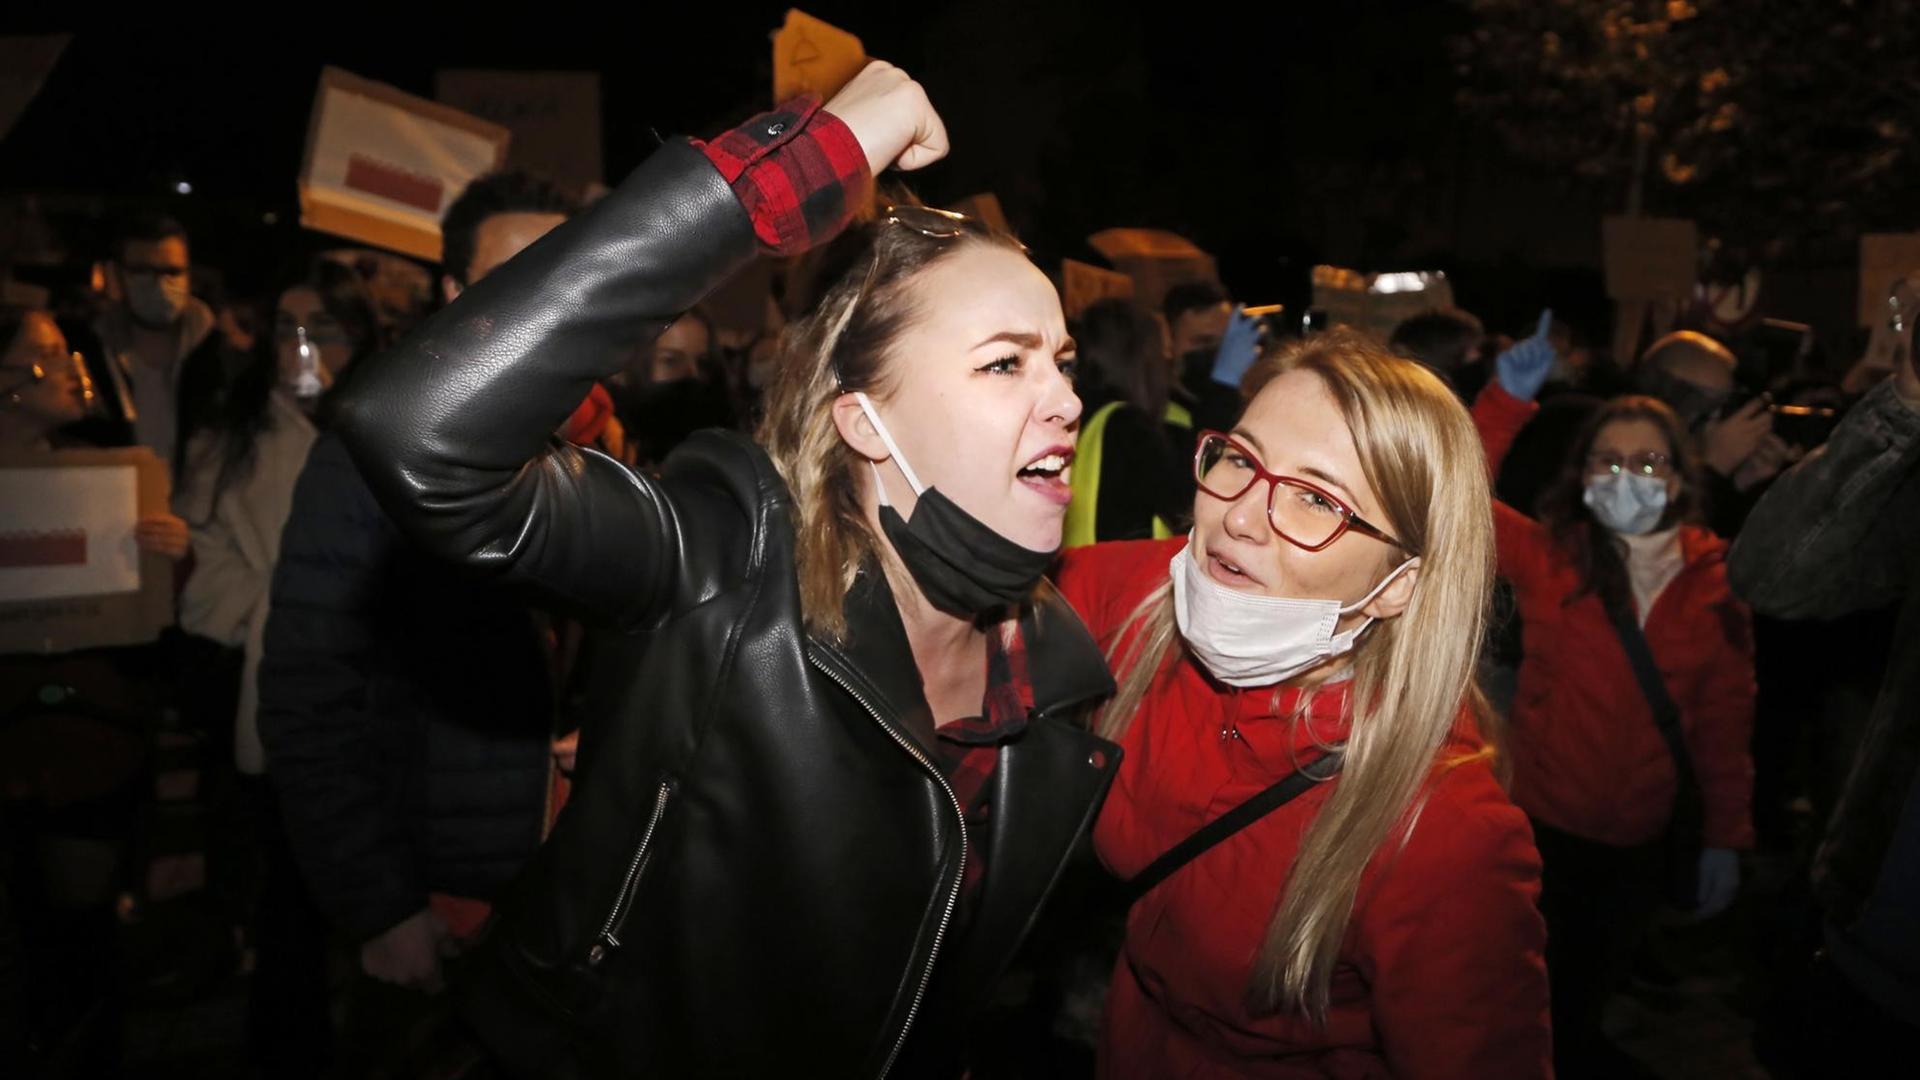 Zwei junge Frauen bei nächtlichen Protesten gegen das verschärfte Abtreibungsrecht in Polen. Eine der Frauen erhebt wütend die Faust.